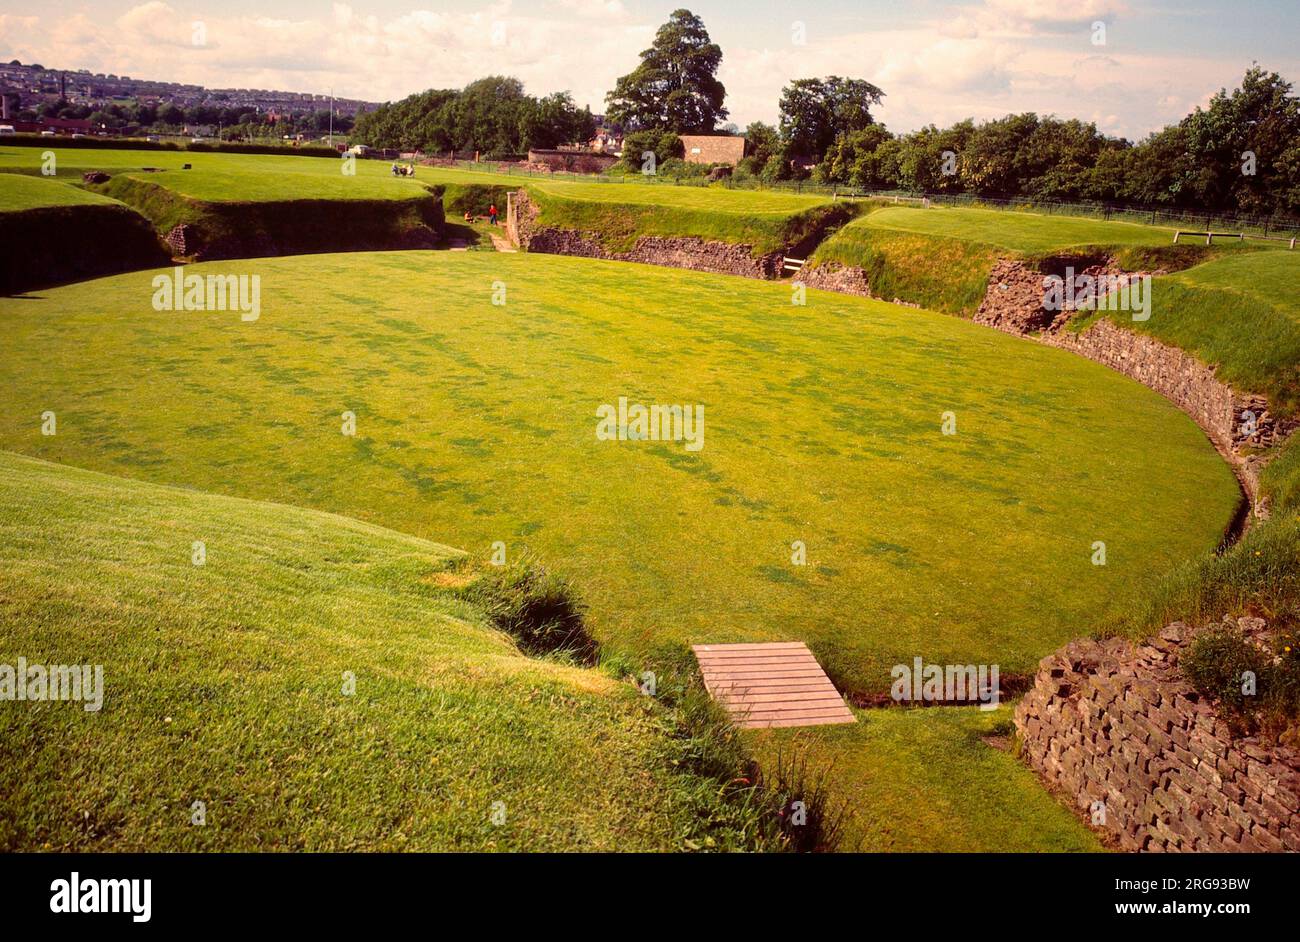 Die Überreste des römischen Amphitheaters in Caerleon-on-Usk, Monmouthshire, Wales, Teil der 50 Hektar großen römischen Legionärfestung Isca, aus dem Jahr 75 v. Chr. Stockfoto